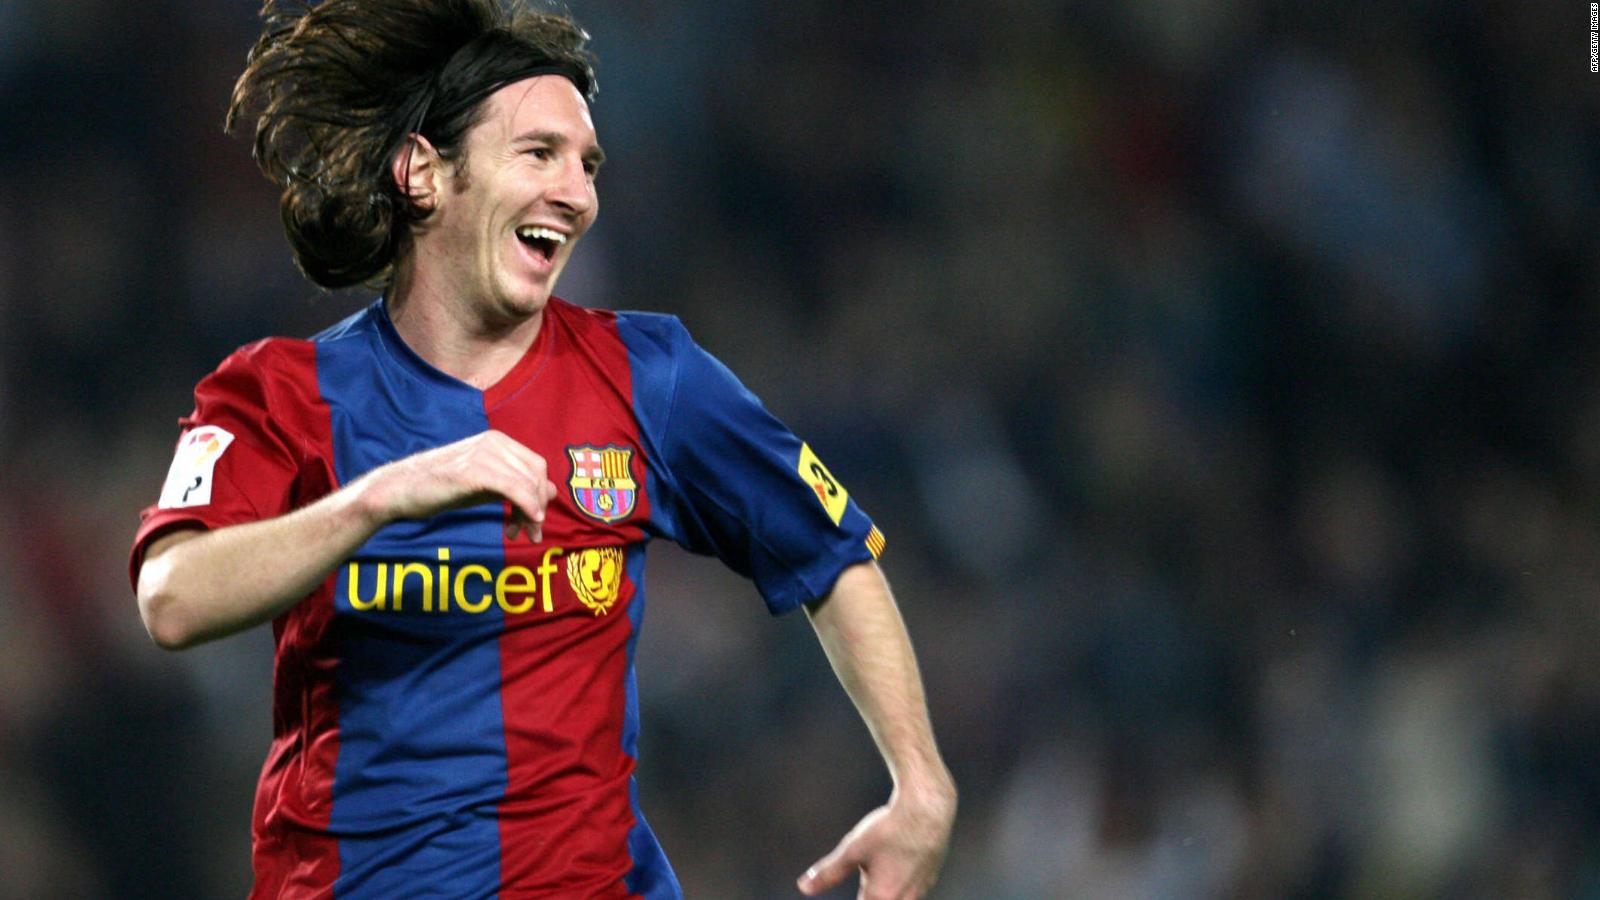 Una animación recuerda el gol "maradoniano" de Lionel Messi al Getafe